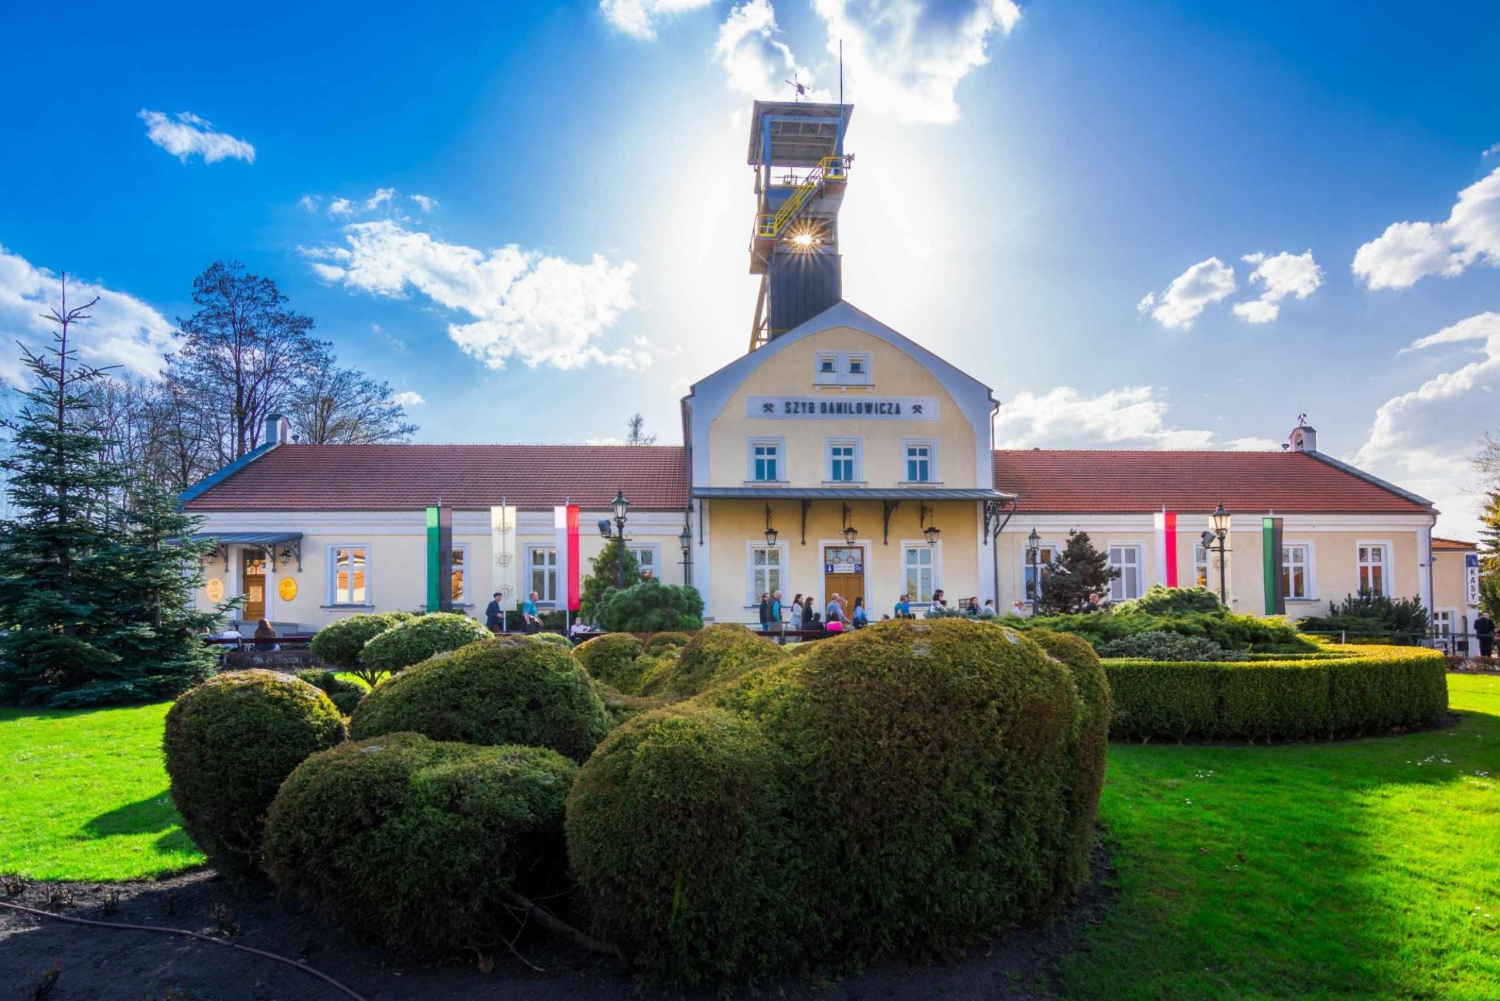 Mina de Sal de Wieliczka: Tour guiado desde Cracovia